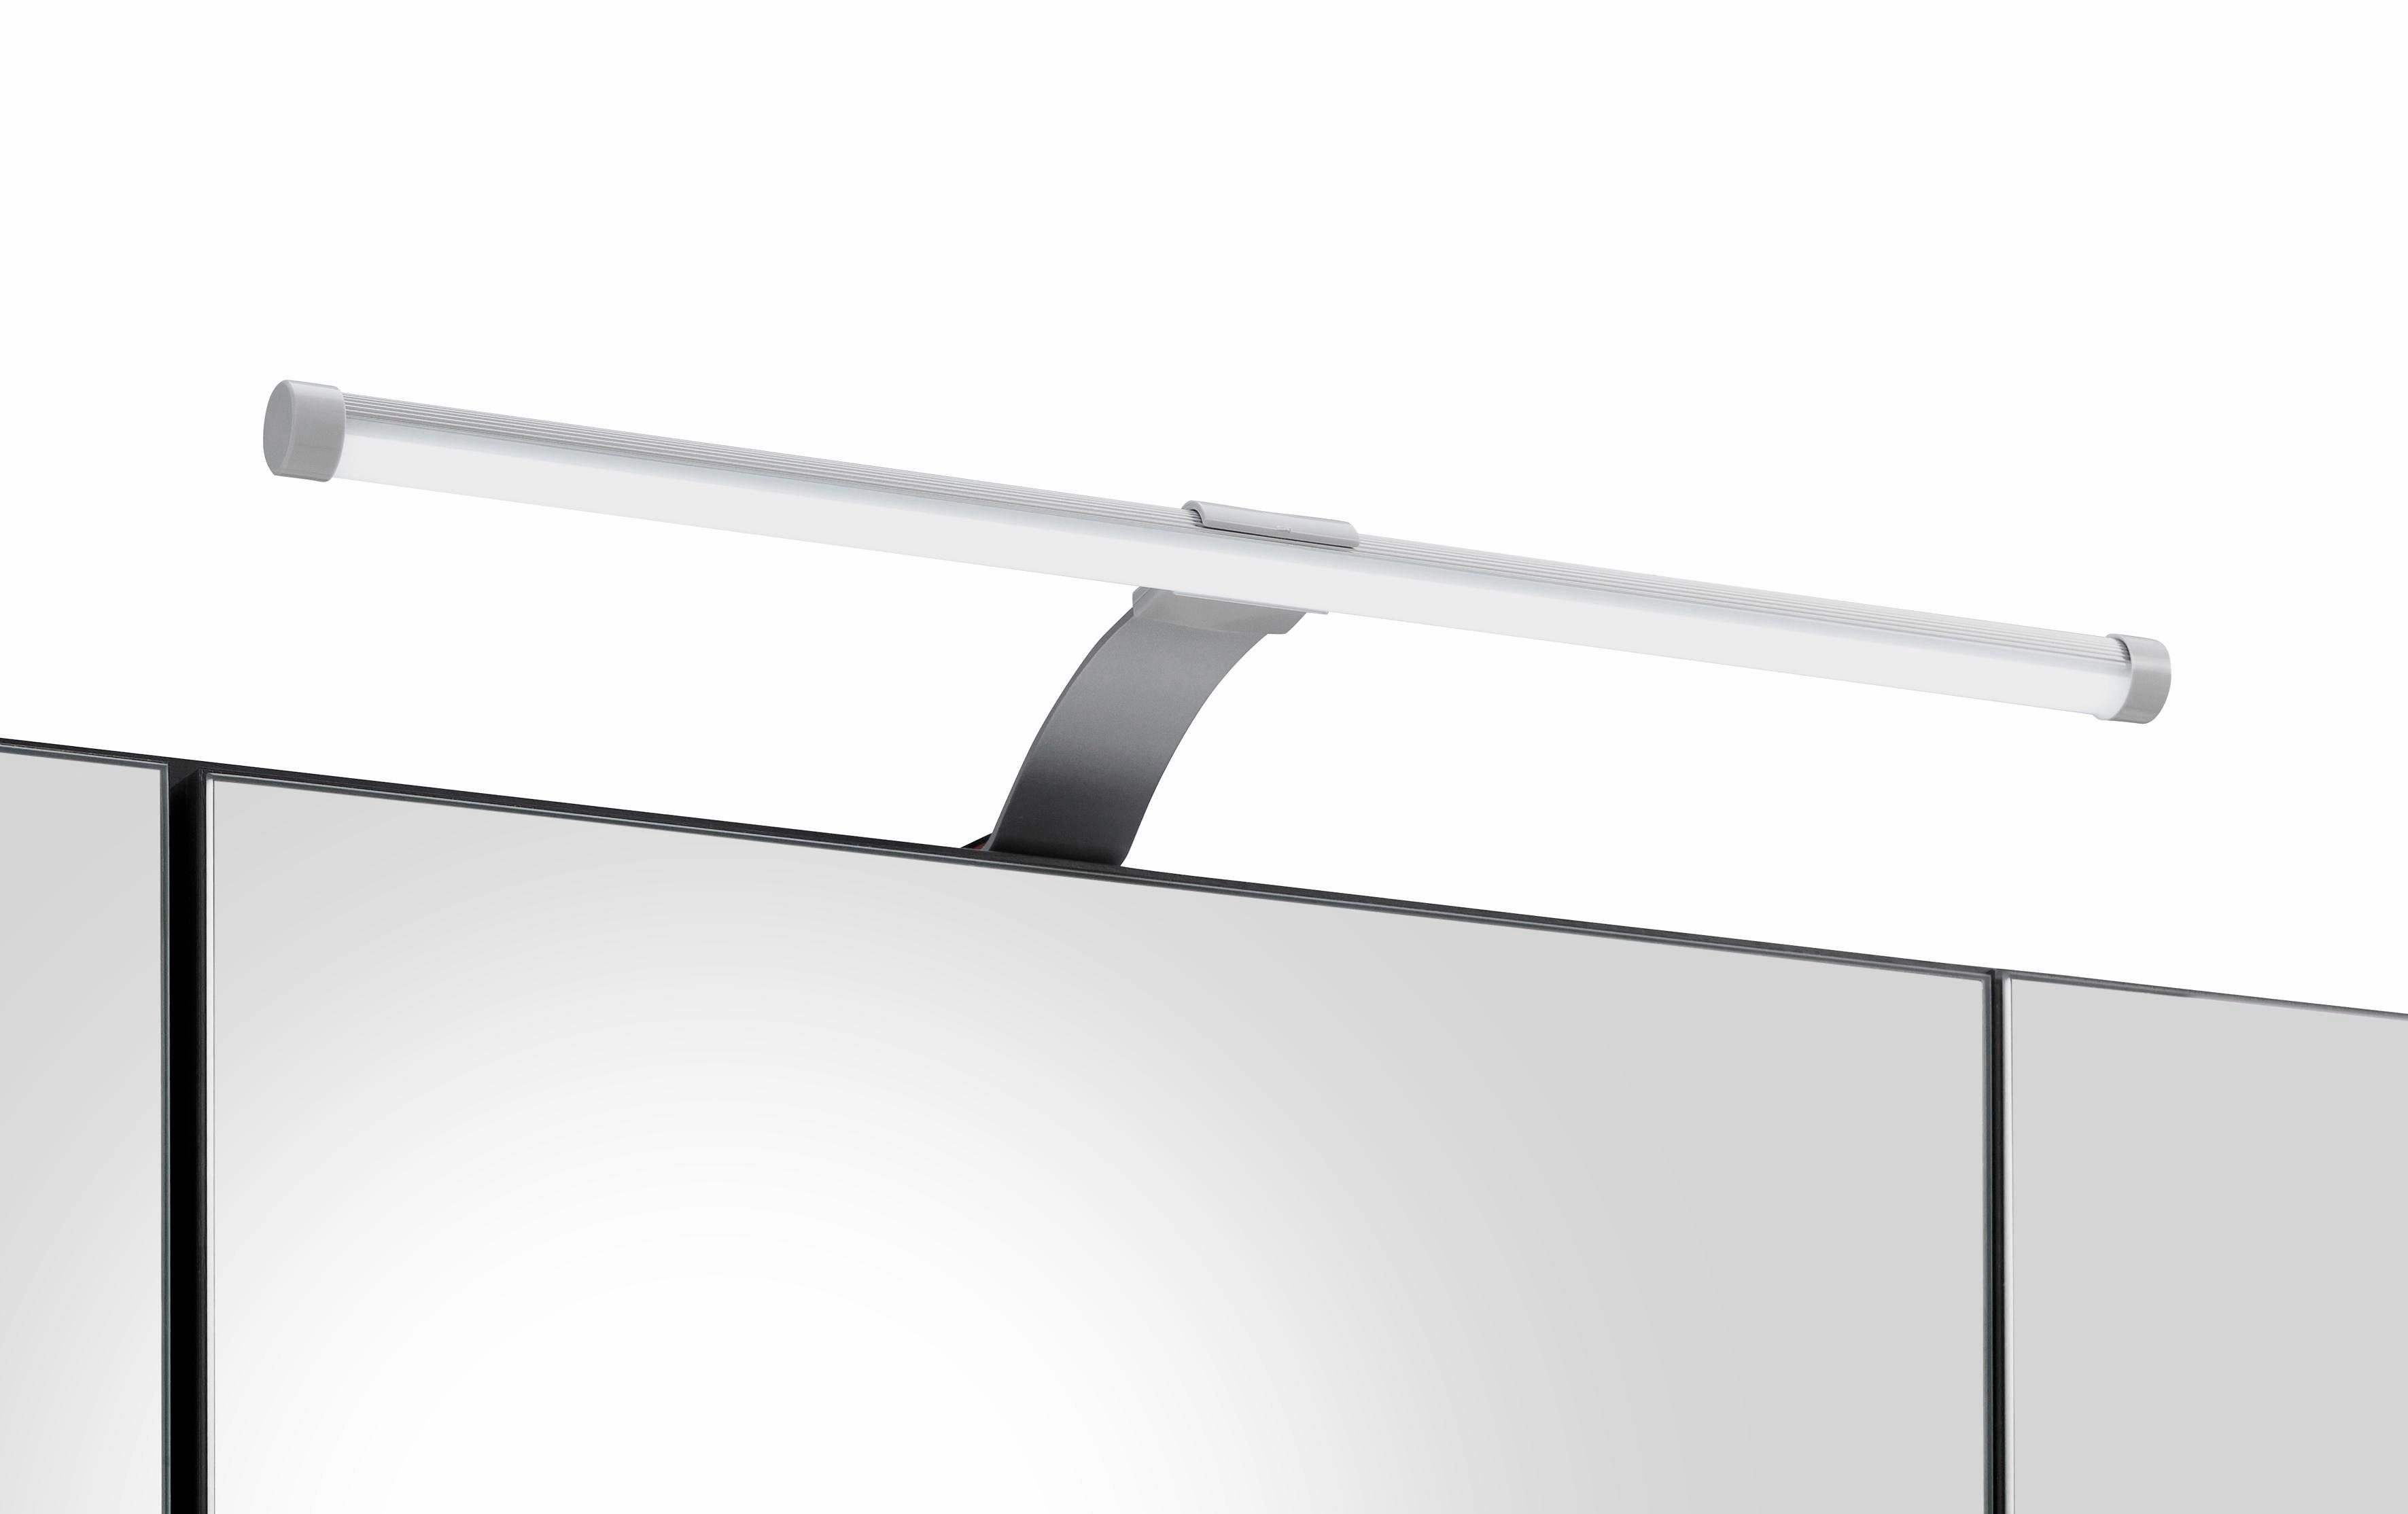 MÖBEL HELD LED-Beleuchtung mit Spiegelschrank Portofino weiß | weiß